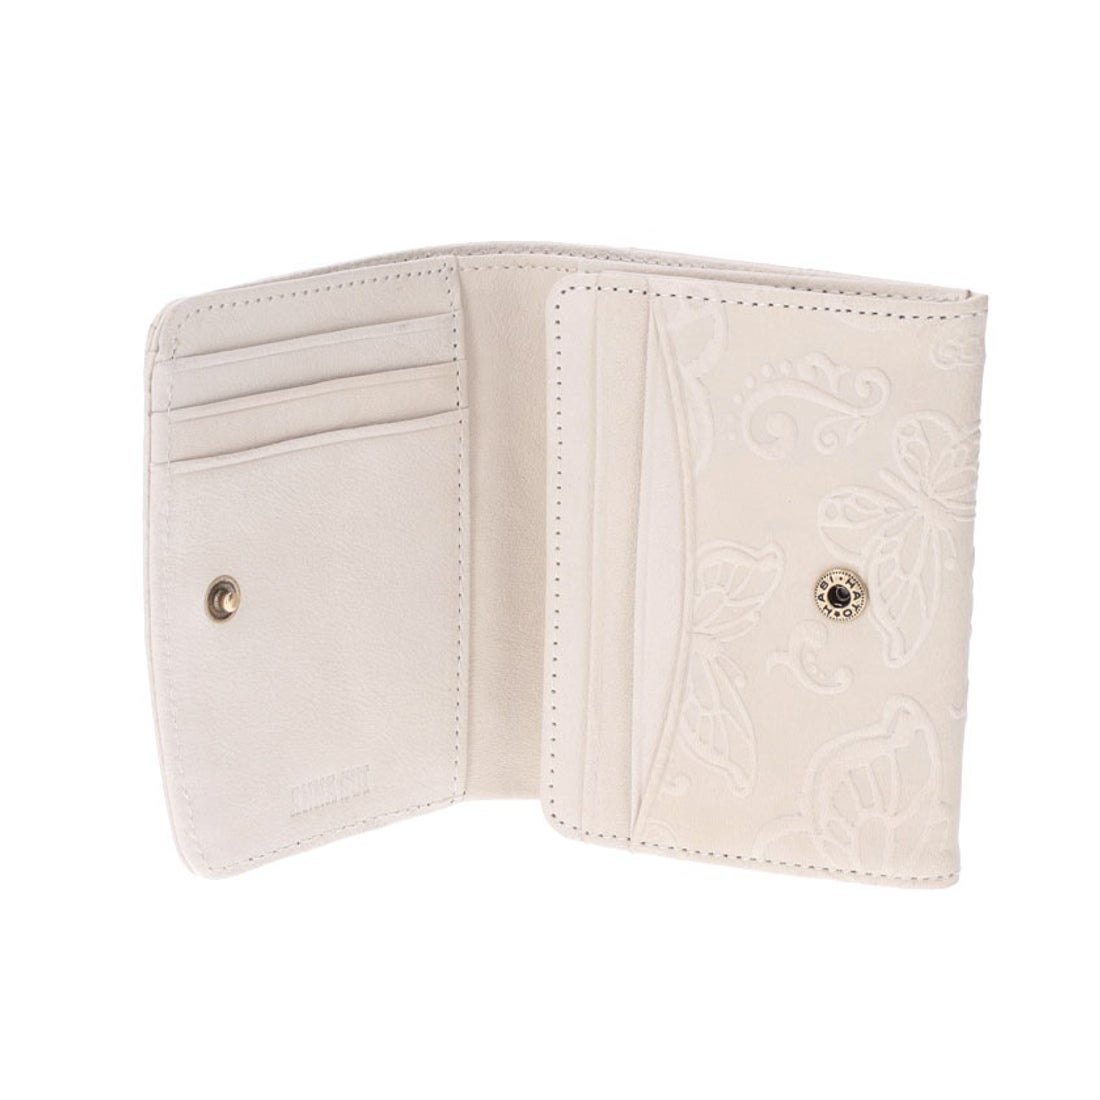 ANNA SUI バタフライダンス BOX二つ折り財布 キャメル -ファッション